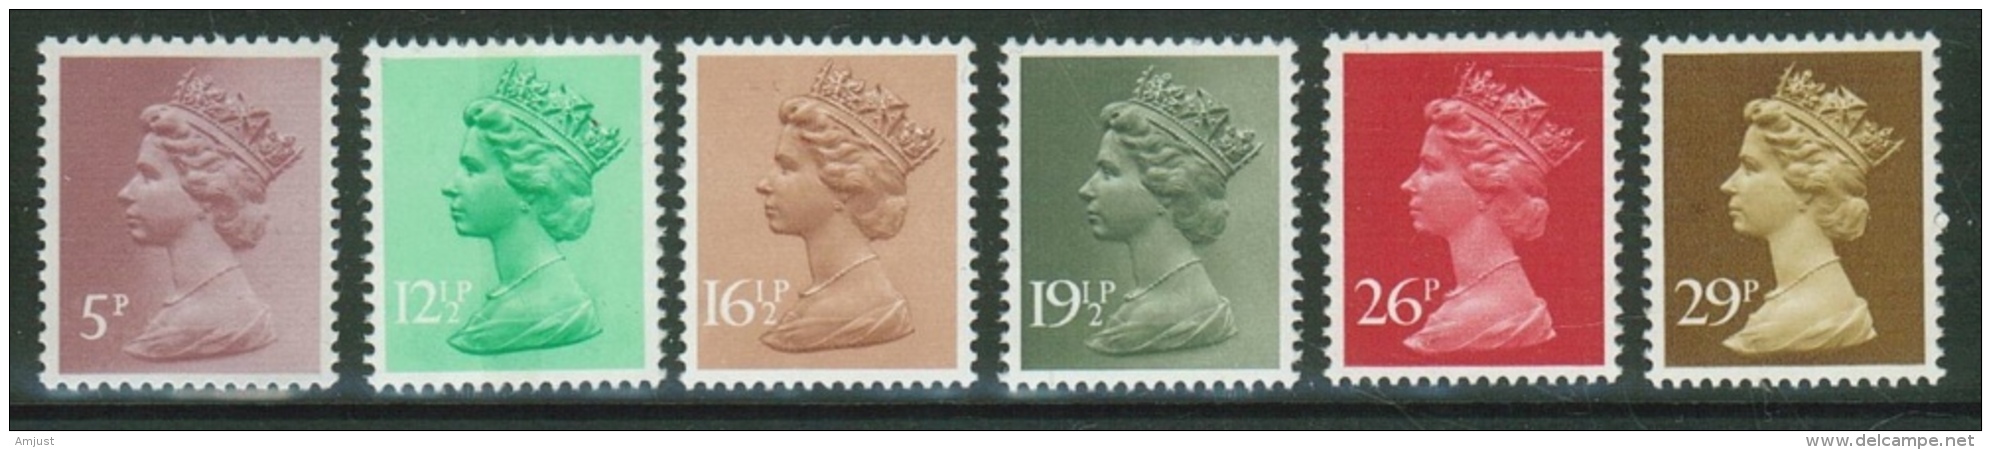 Grande Bretagne// Great Britain//1982 // Série Courante Elizabeth II  Y&T 1017 -1022 ** - Non Classés